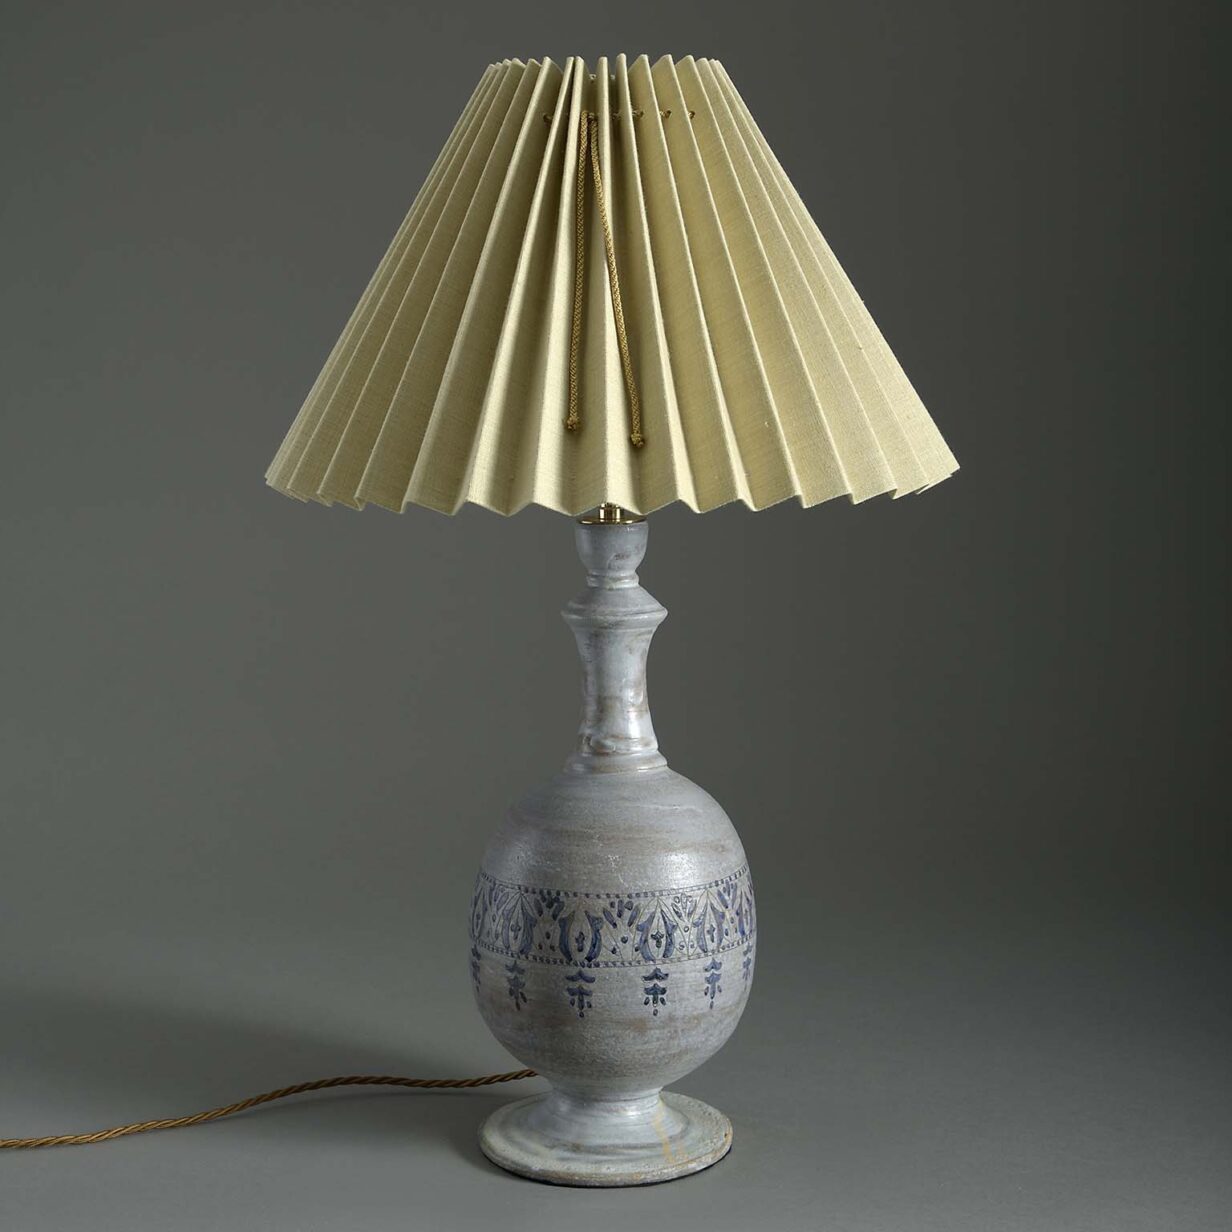 Moorish pottery lamp